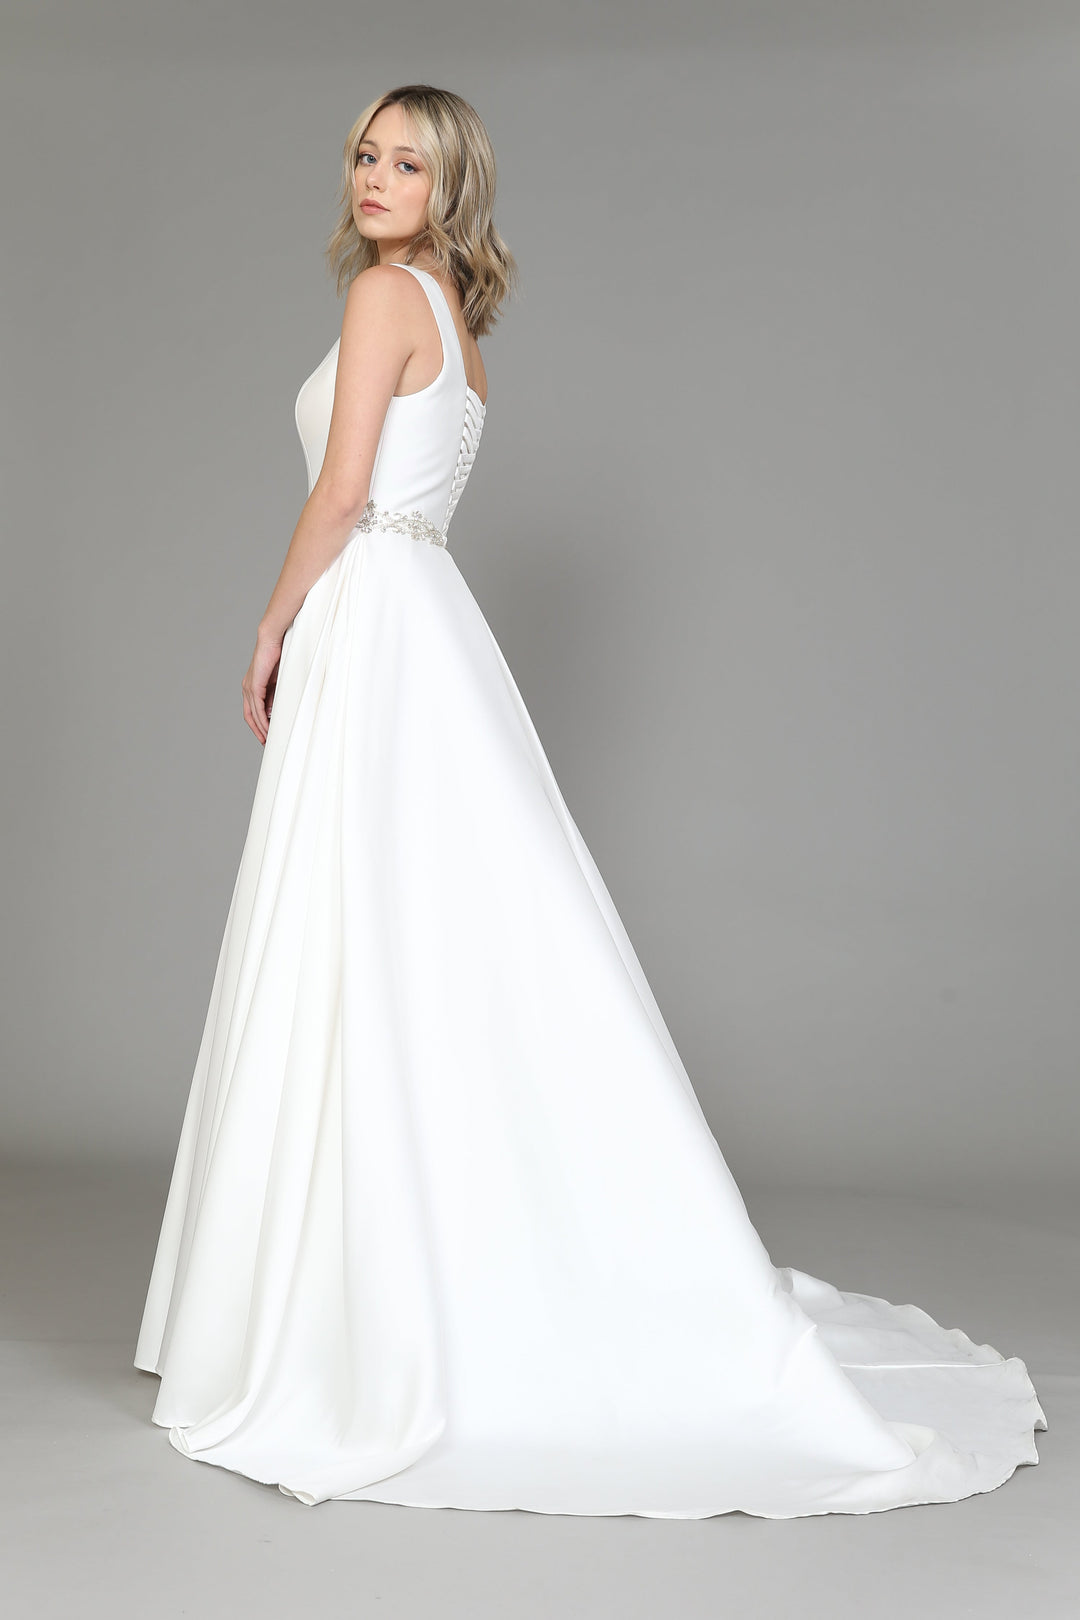 Satin Lace-Up Back Wedding Dress by Poly USA 8518